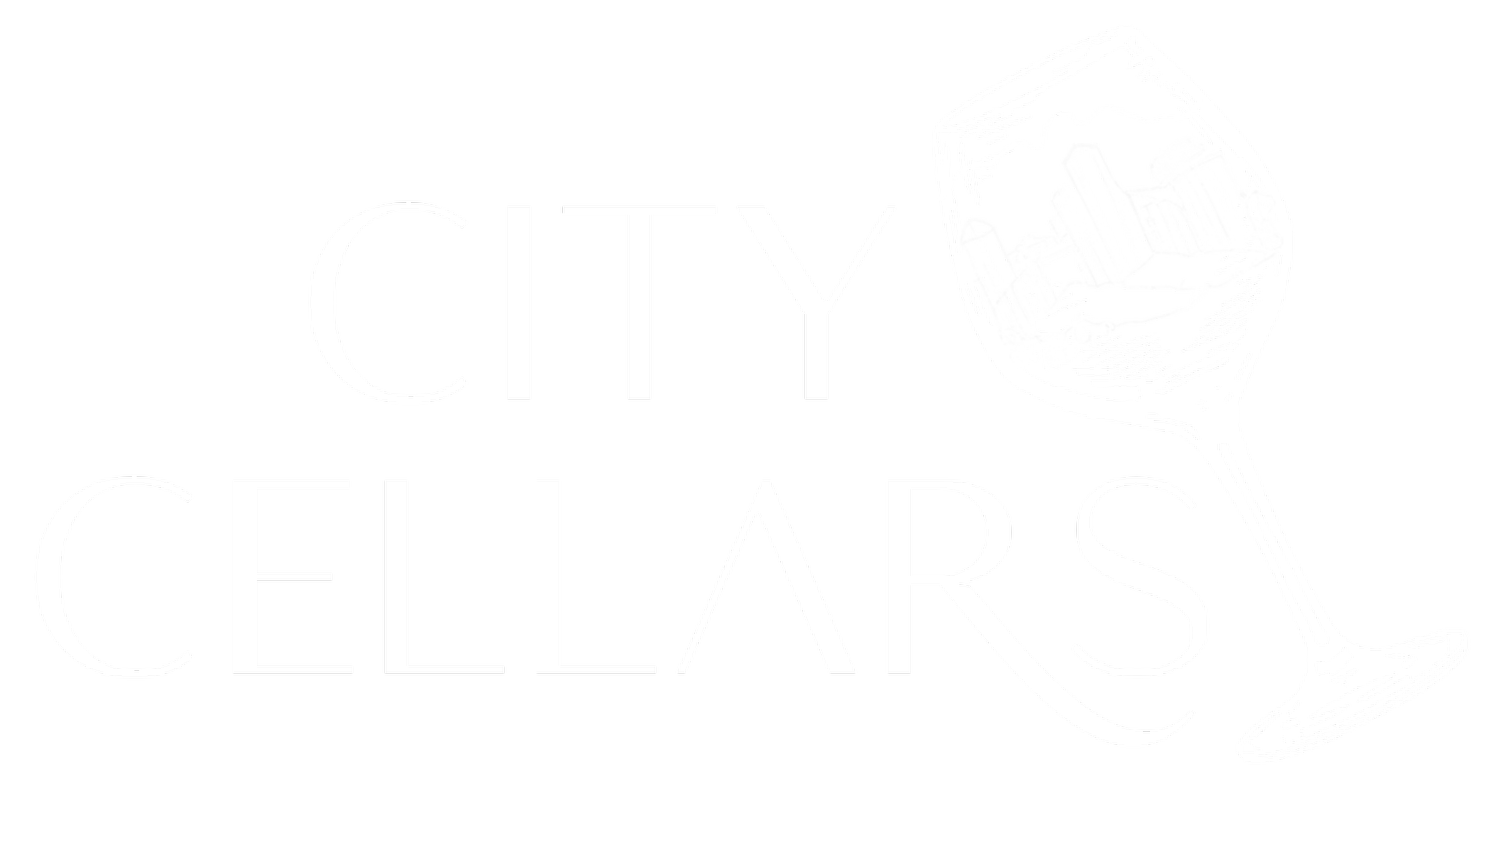 City Cellars HTX